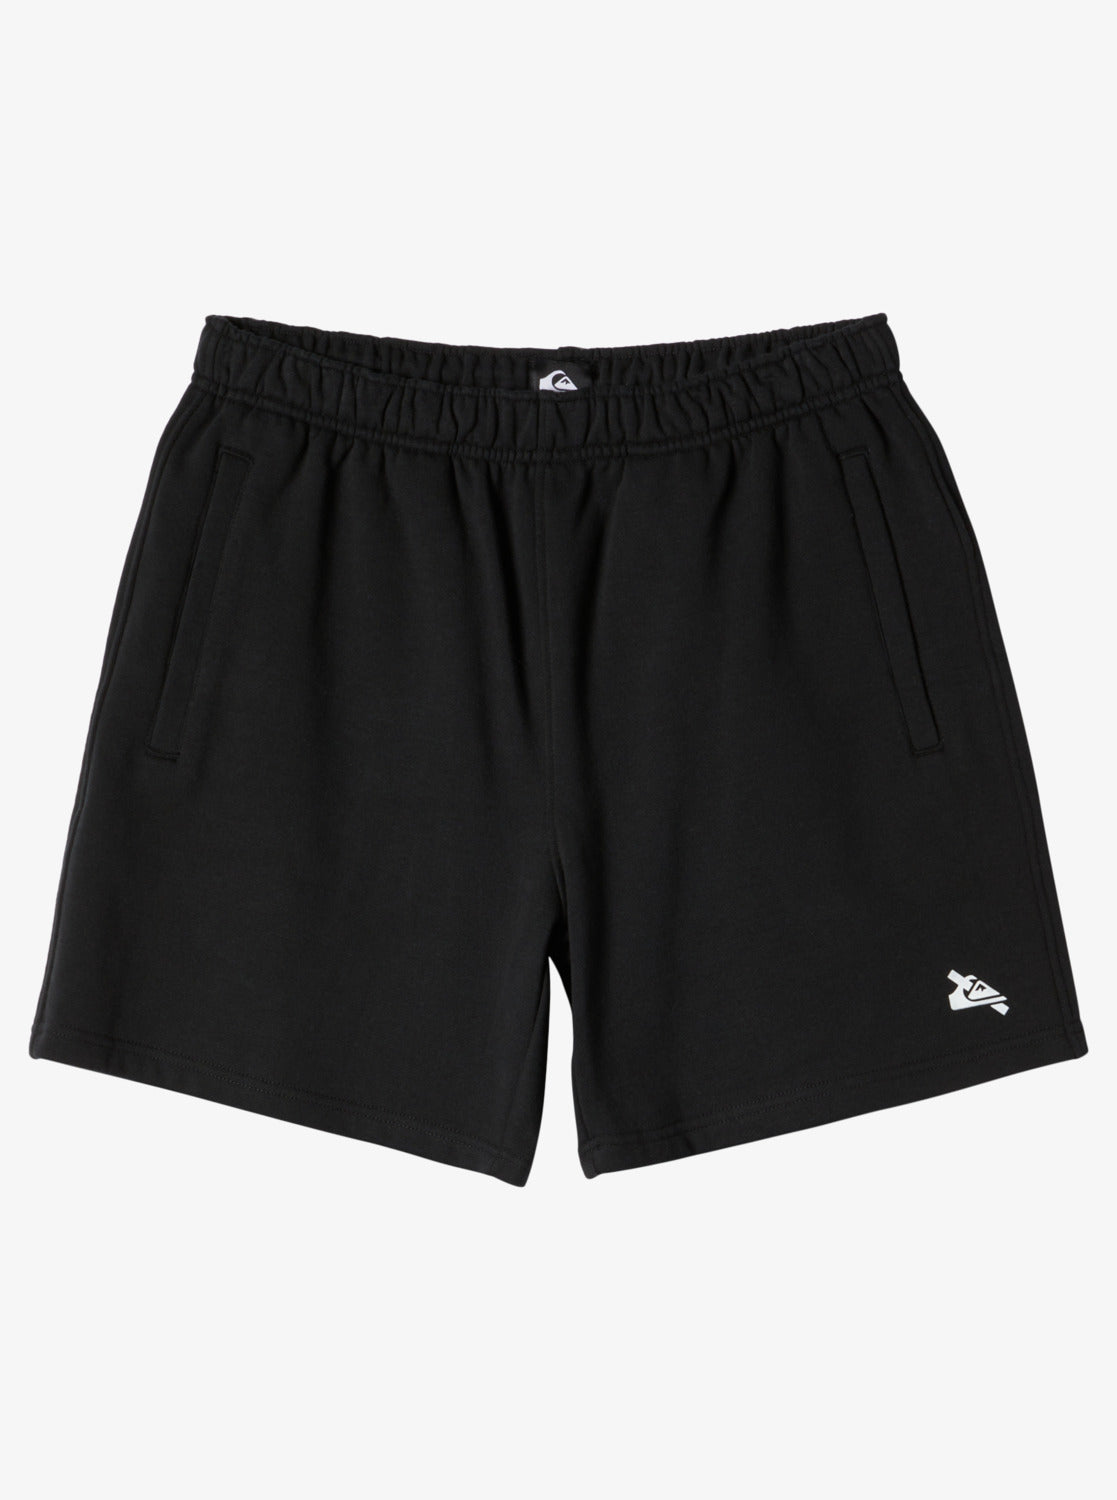 XS® Fit Workout Shorts - Black - AmwayGear